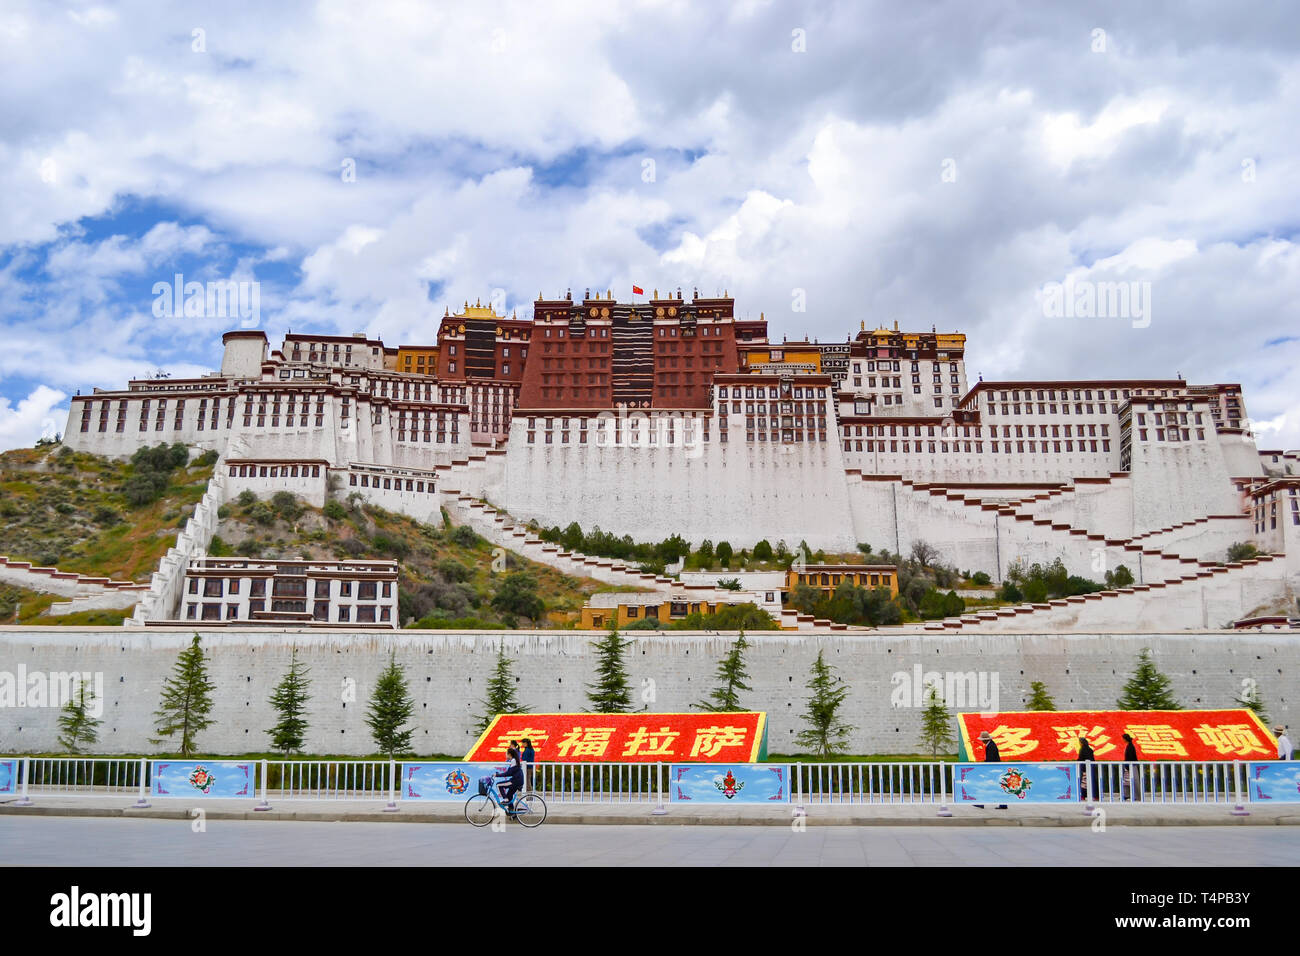 Potala-palast, der ursprünglichen Residenz des Dalai Lama und der wichtigsten Architektur des tibetischen Buddhismus in Lhasa, Tibet, China Stockfoto